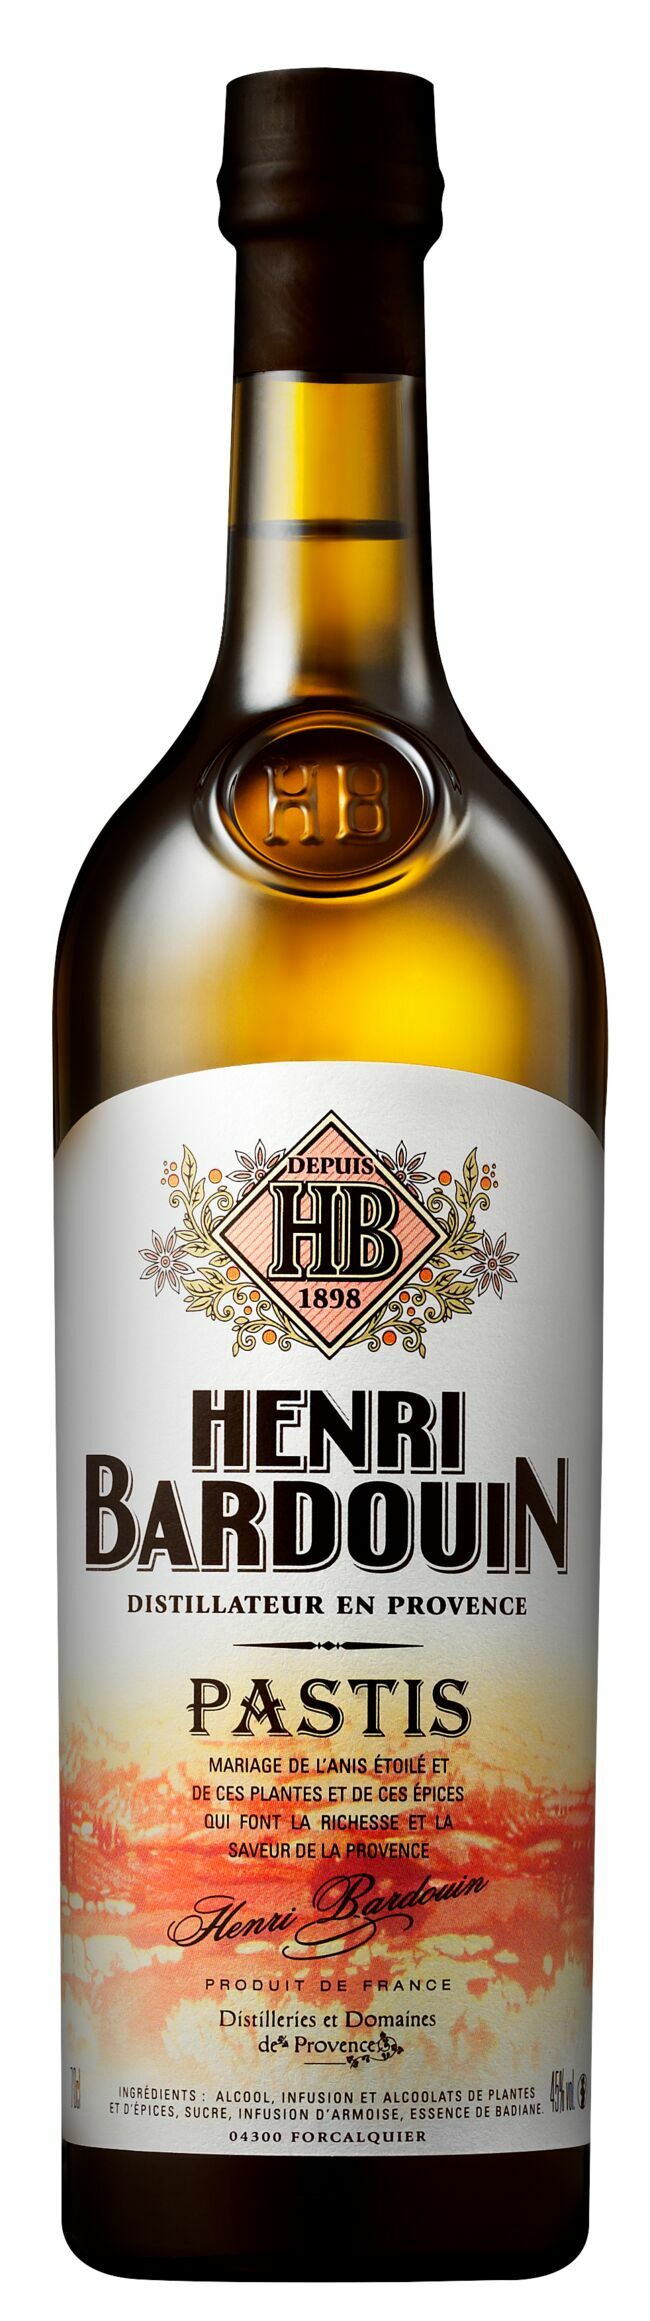 Pastis Henri Bardouin Grand Cru, Distilleries et Domaines de Provence, 24,10 € la bouteille de 70 cl.